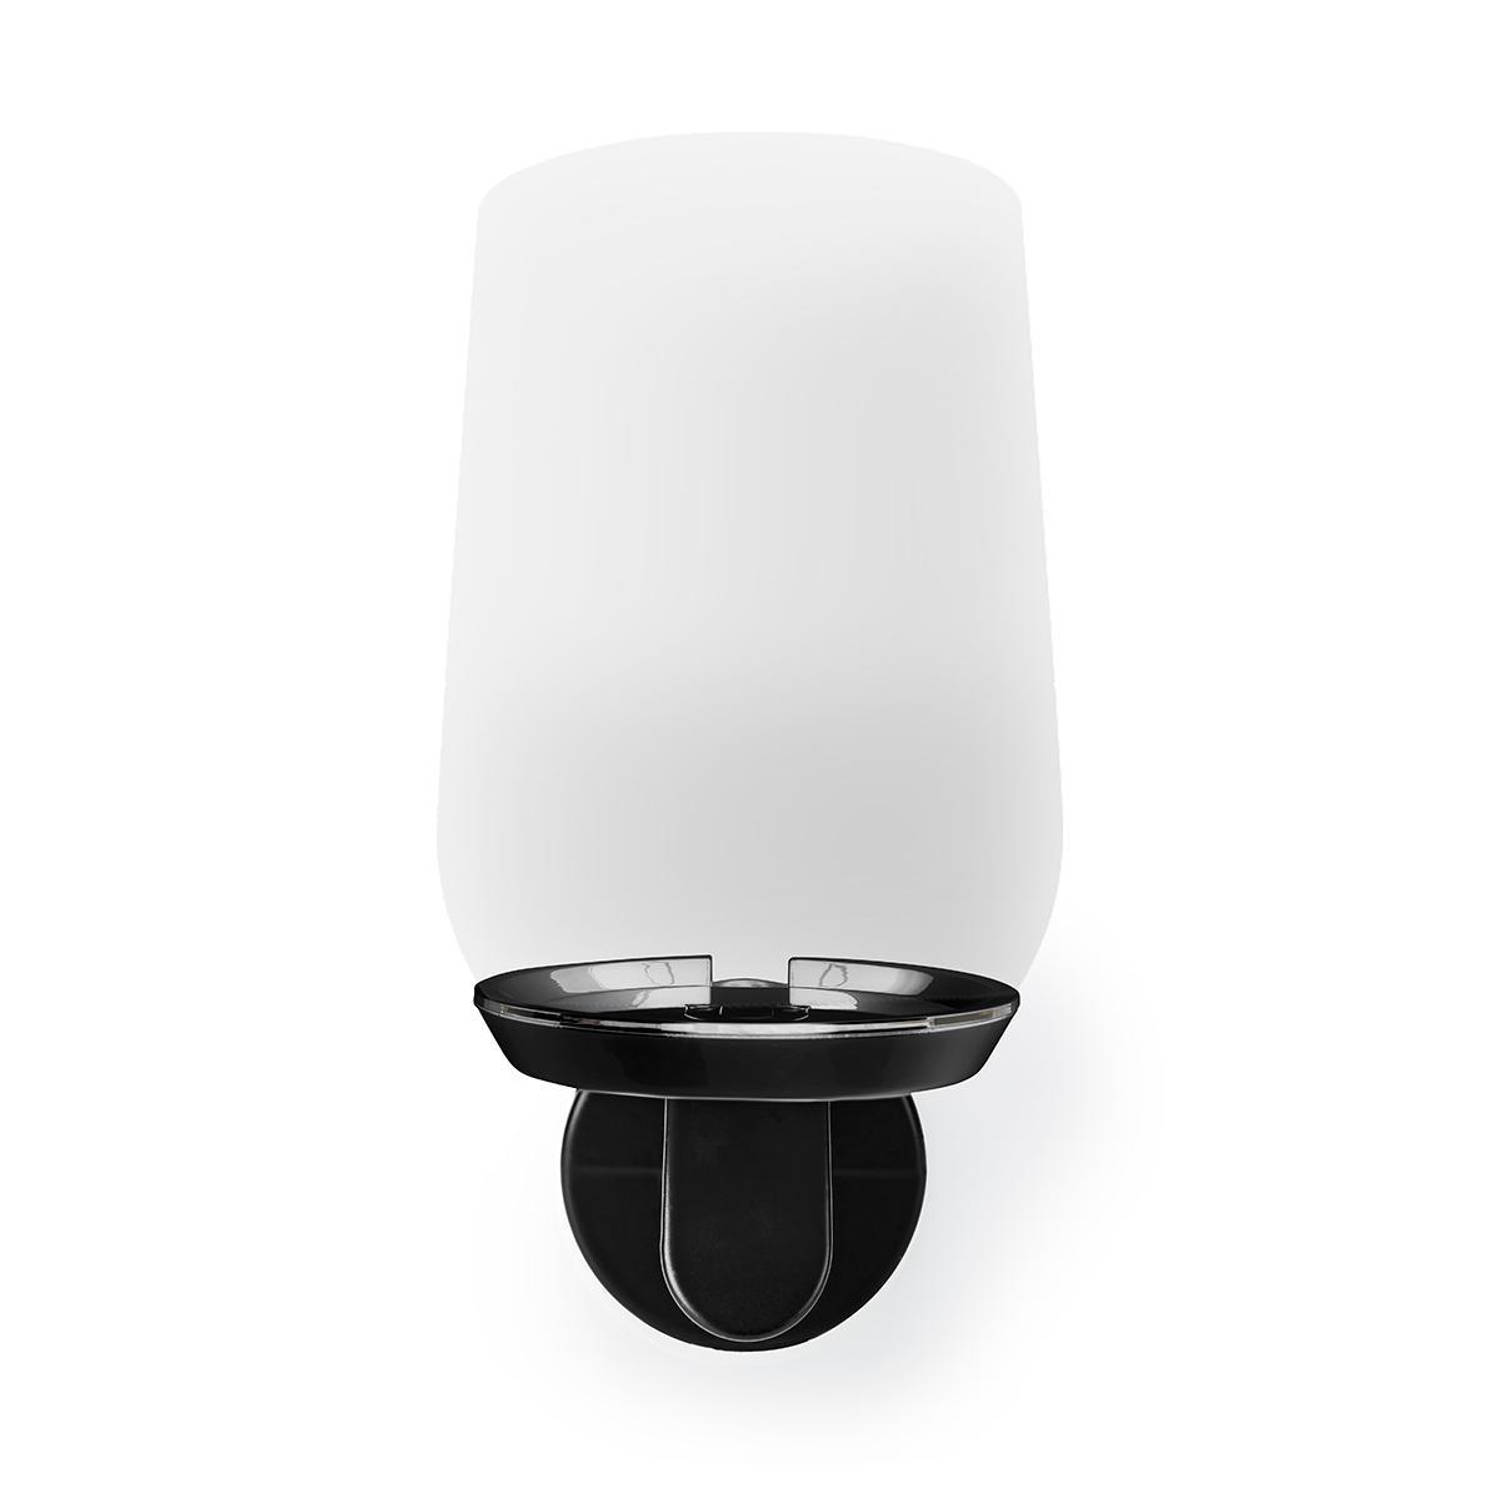 Muurbeugel voor Speaker | Google Home | Max. 2 kg | Vast